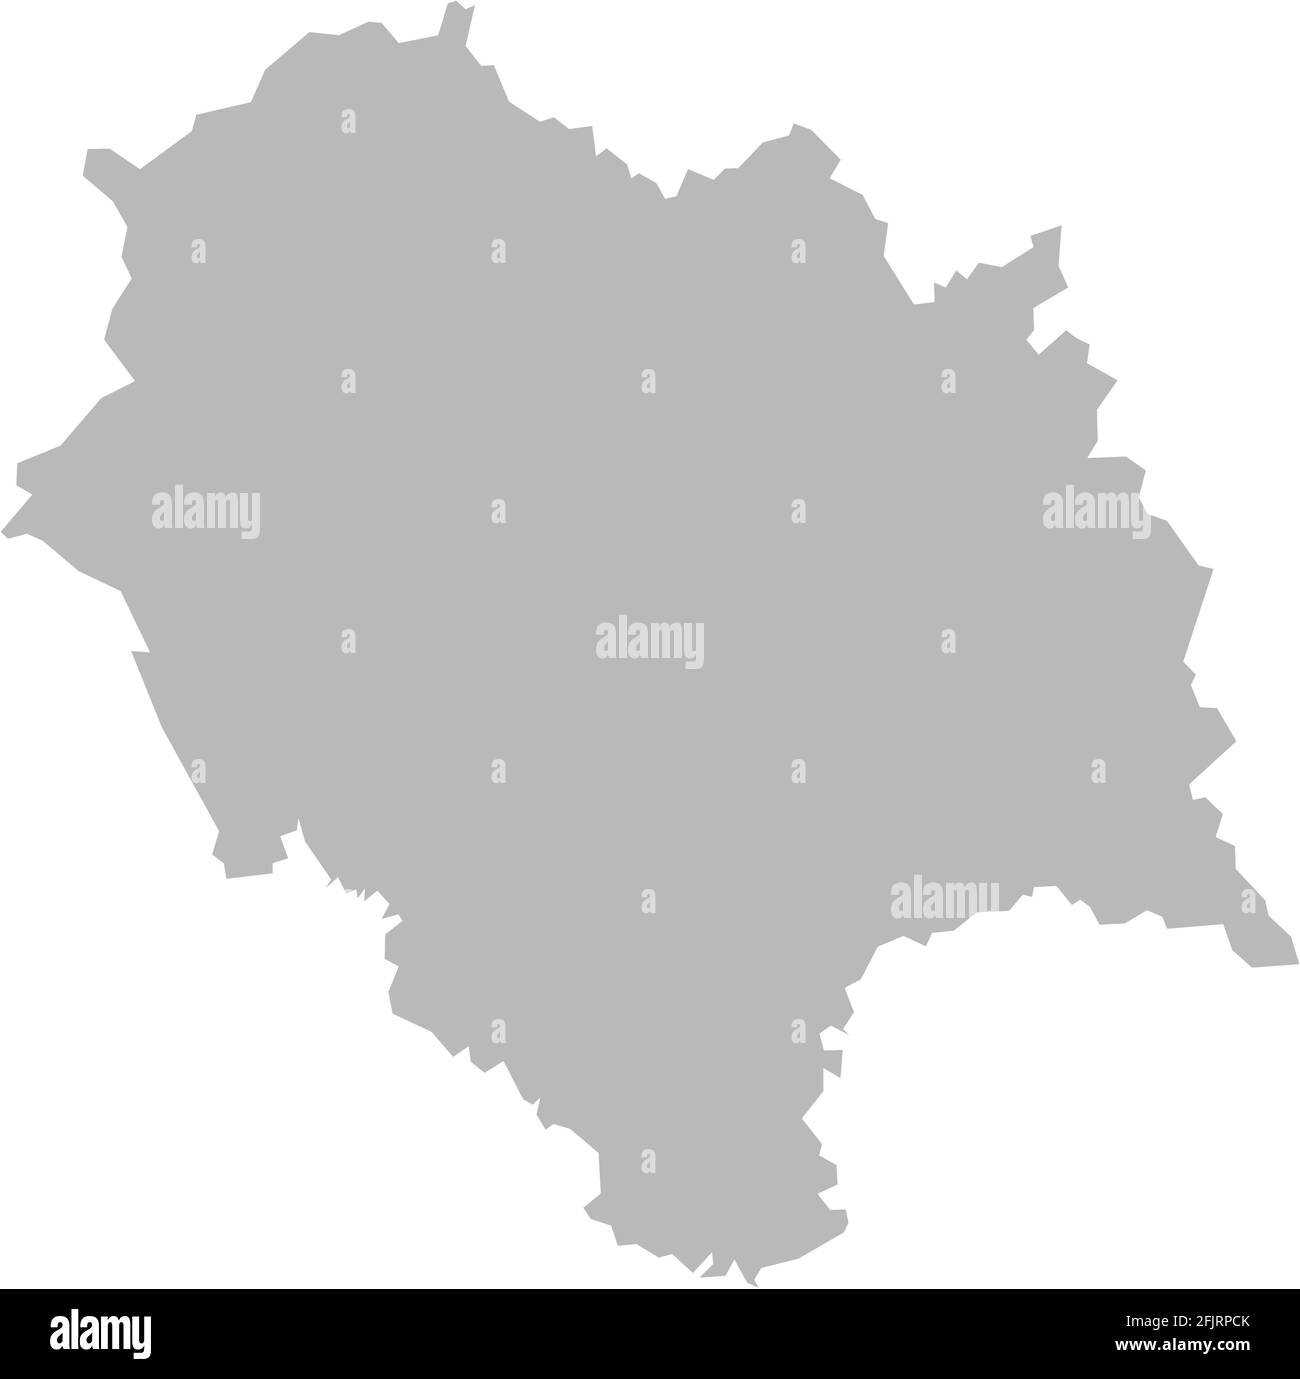 Mappa dello stato indiano di Himachal pradesh. Sfondo grigio chiaro. Progettazione grafica dei concetti aziendali. Illustrazione Vettoriale